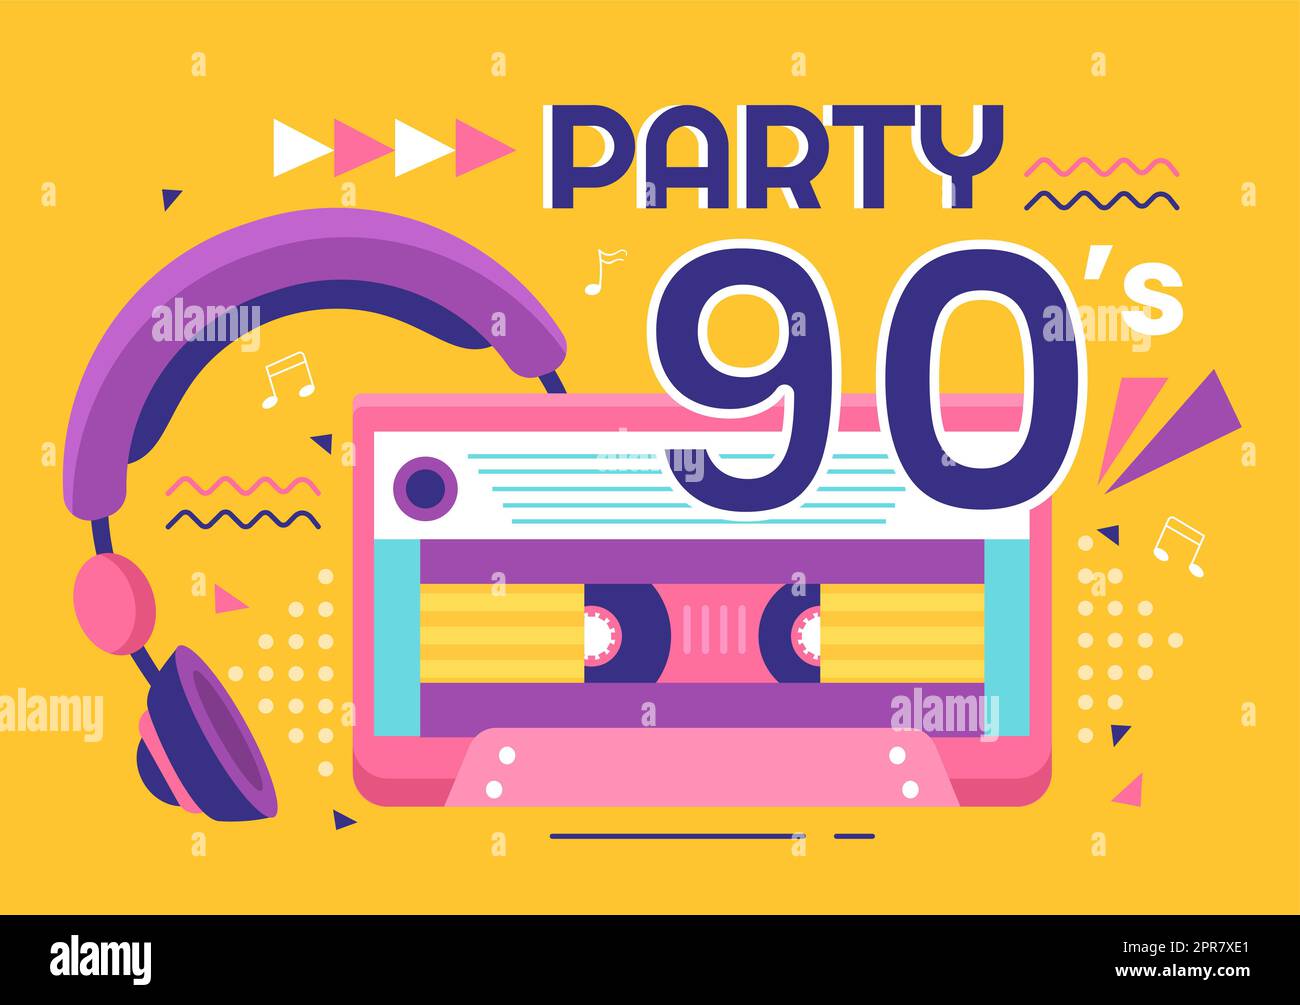 90s Retro Party Cartoon Ilustración de fondo con música de los años 90, deportivos, radio, tiempo de baile y cinta en el moderno diseño de estilo plano Foto de stock